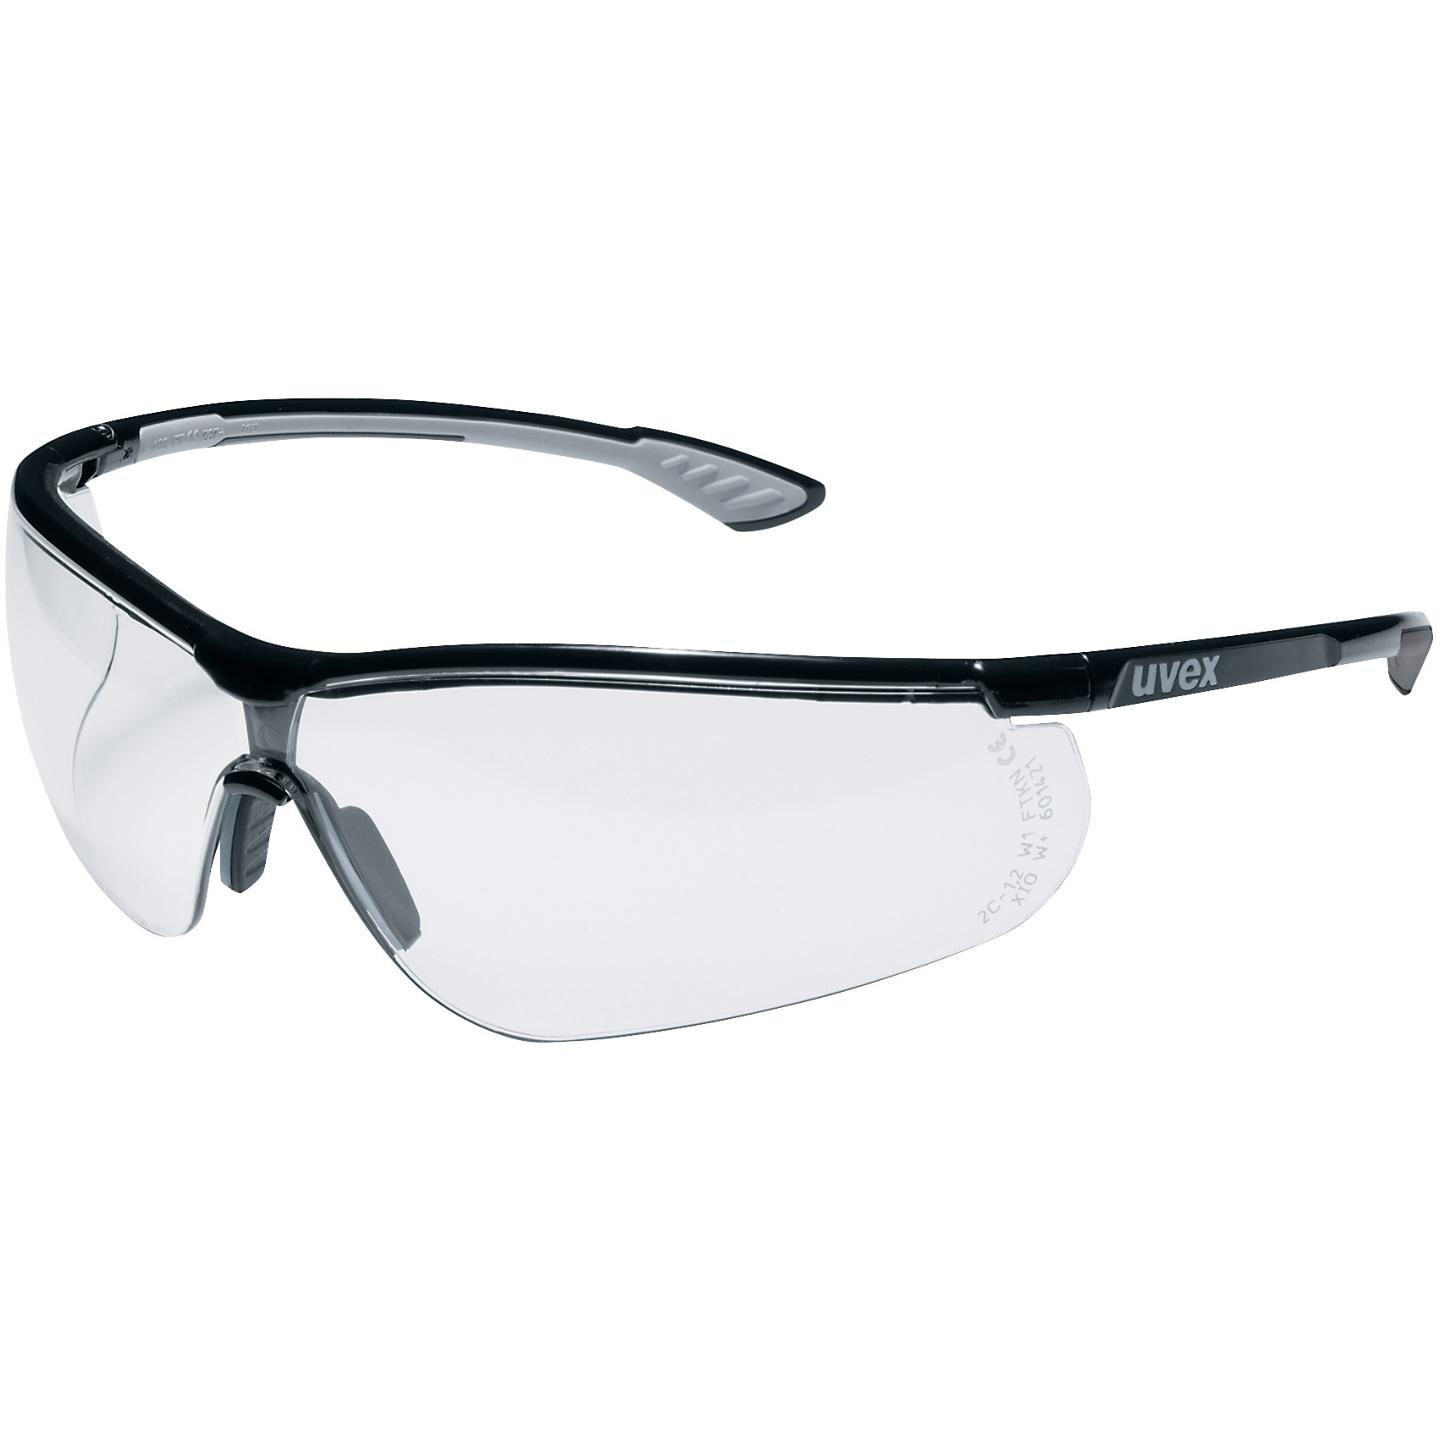 Schutzbrille Uvex sportsstyle schwarz-grau